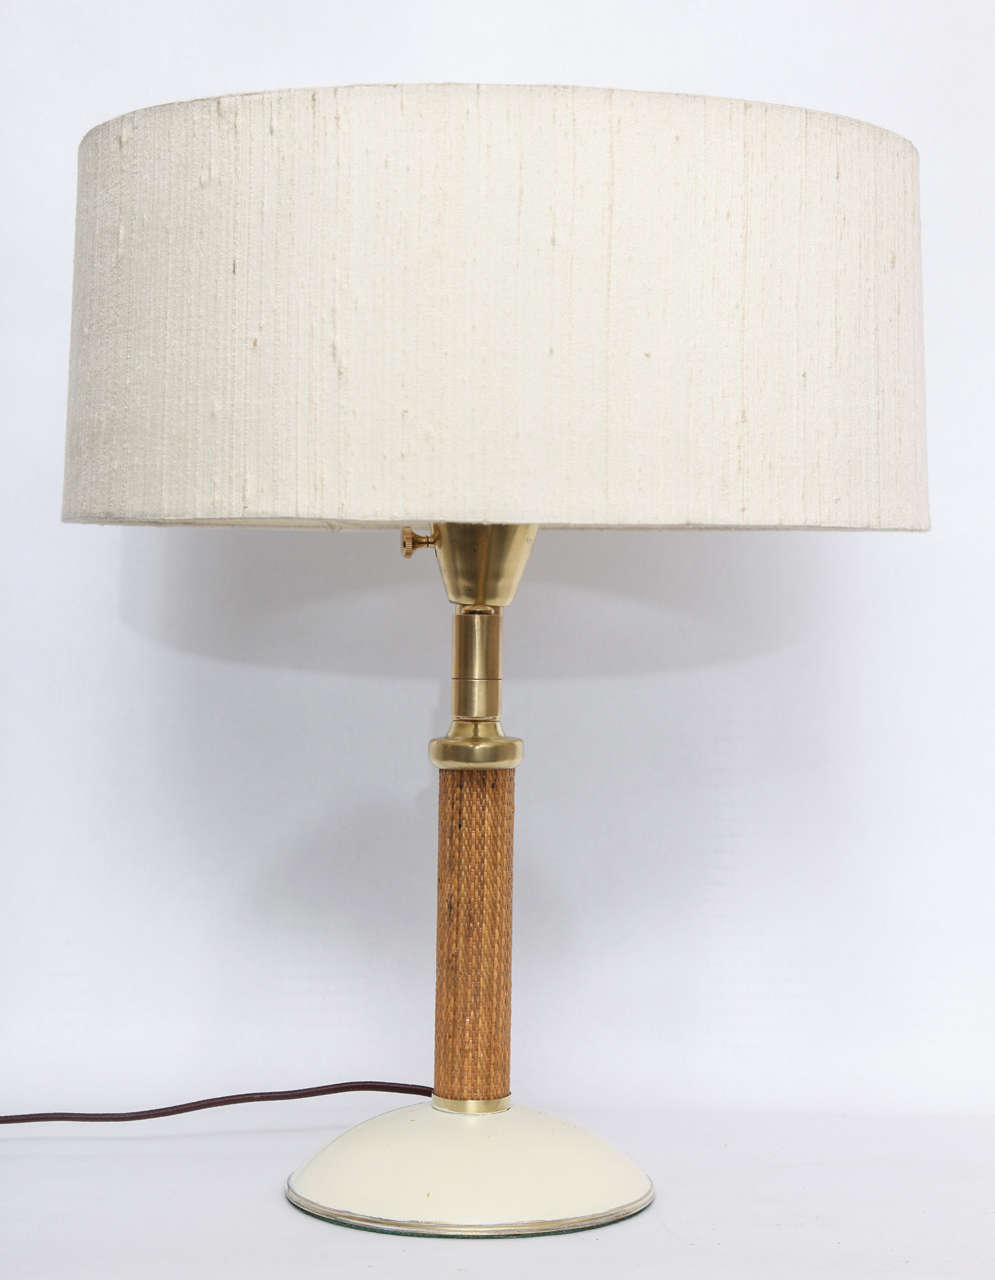  Kurt Versen Table Lamp Articulated American Modernist 1930's 3